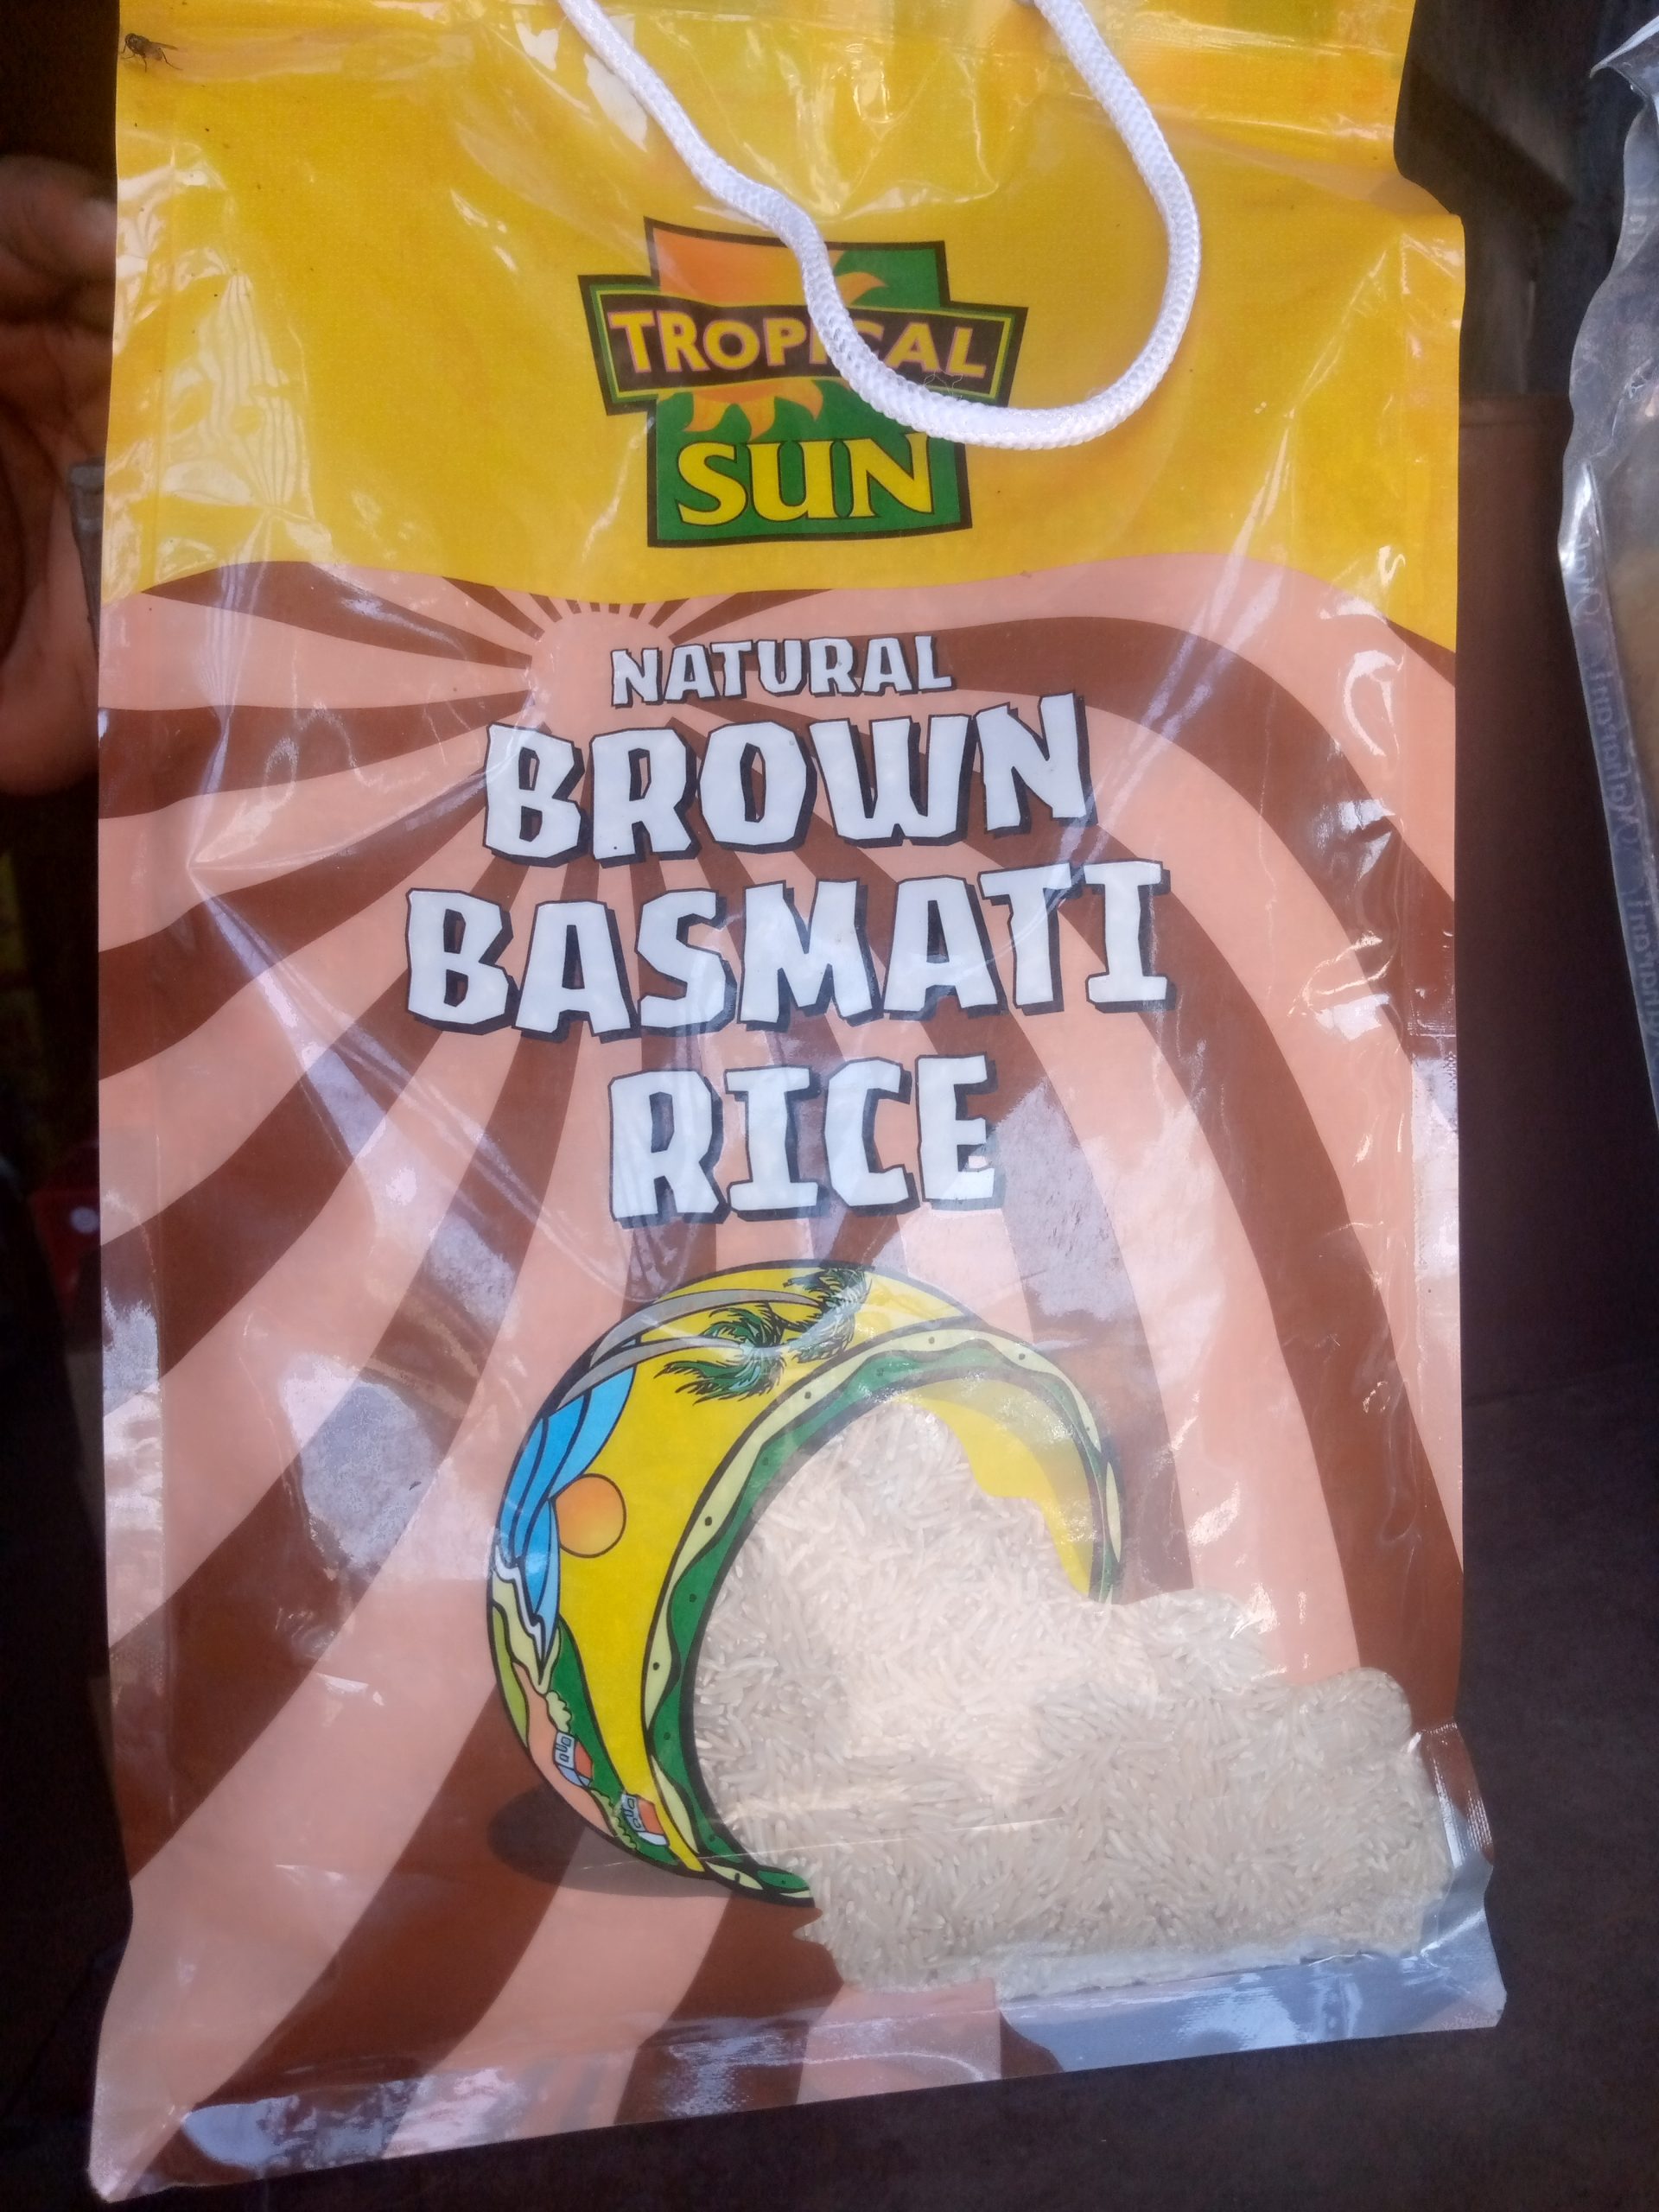 Tropical Sun Natural Brown Basmati Rice 5kg